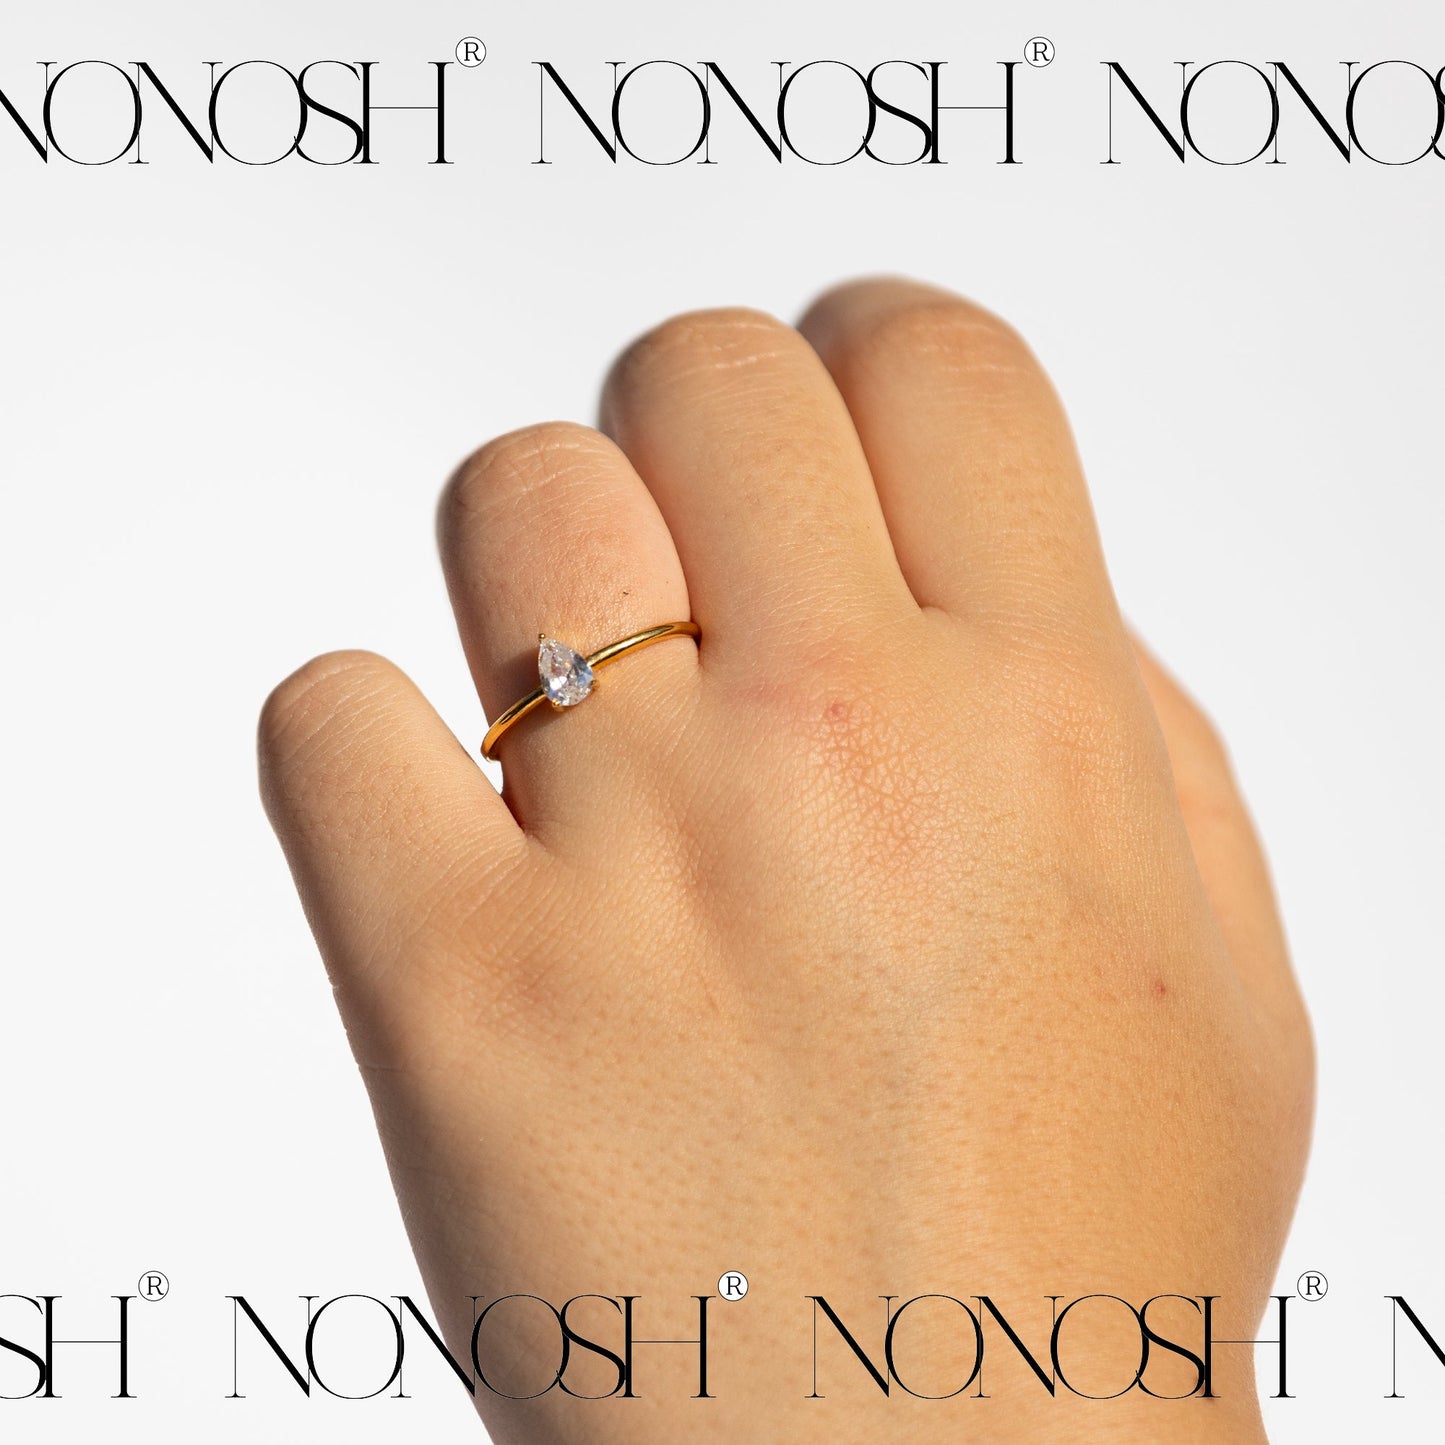 Weißer CZ Ring Gold Verstellbar - NONOSH